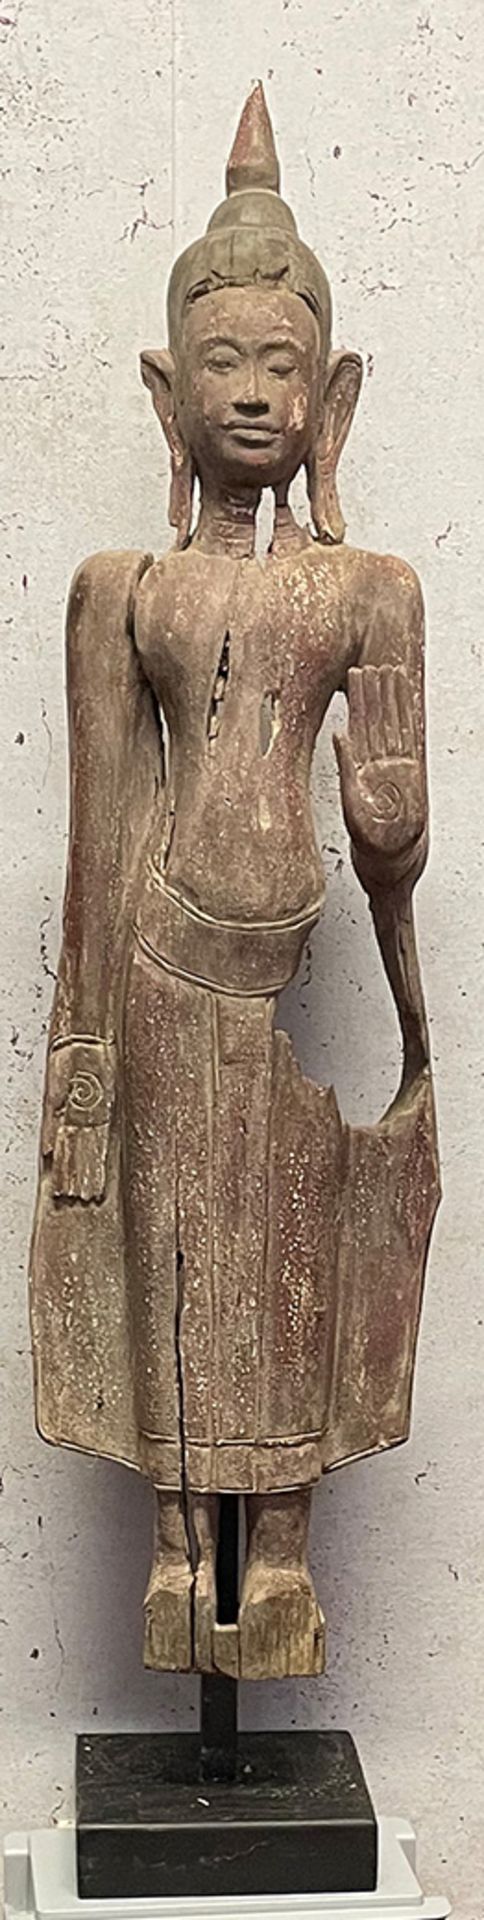 Stehender Buddha, Holz, auf Sockel montiert, Gesamthöhe 112 cm